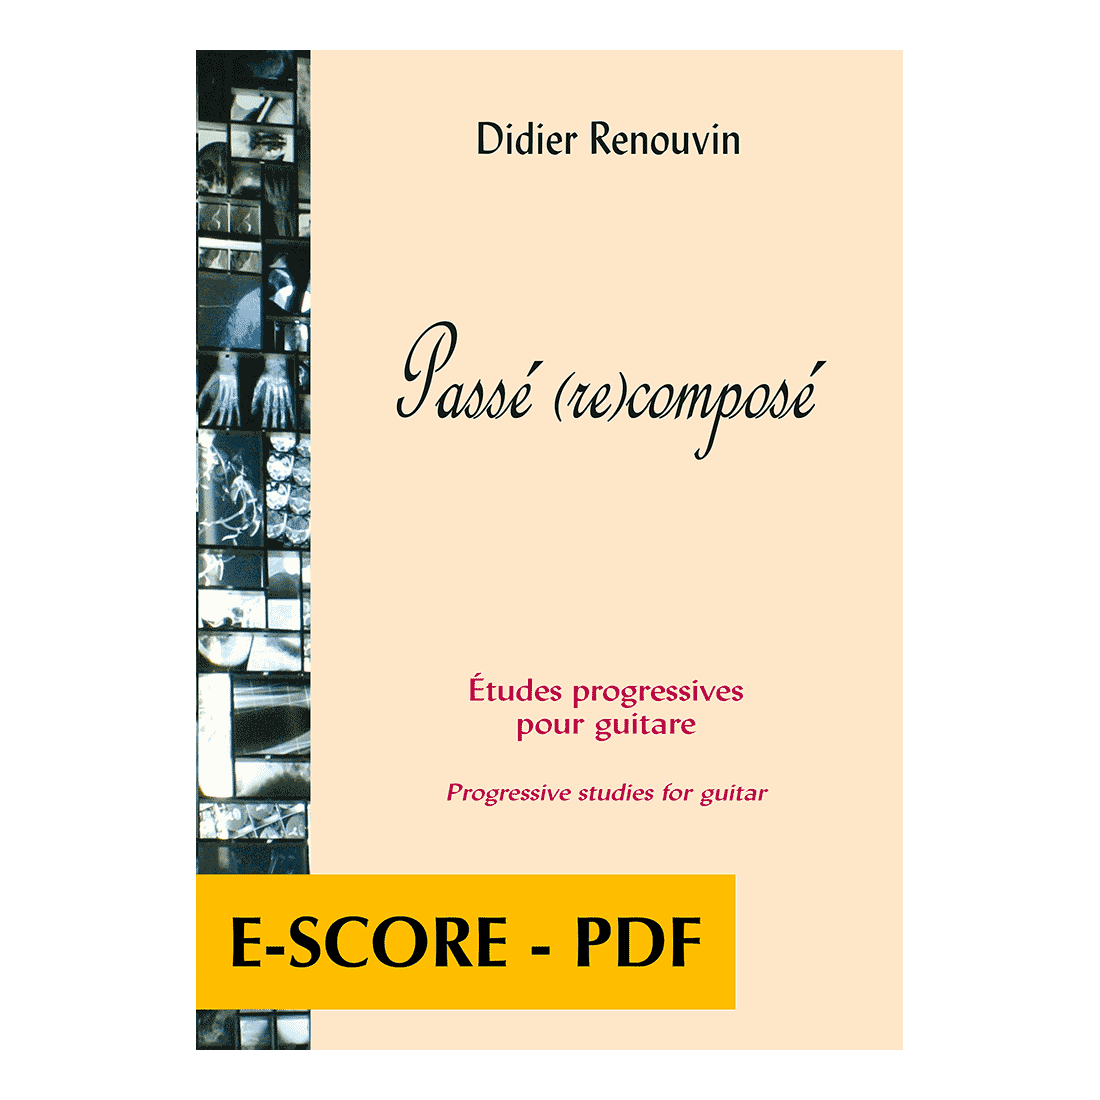 Passé (re)composé - Etudes progressives pour guitare - E-score PDF